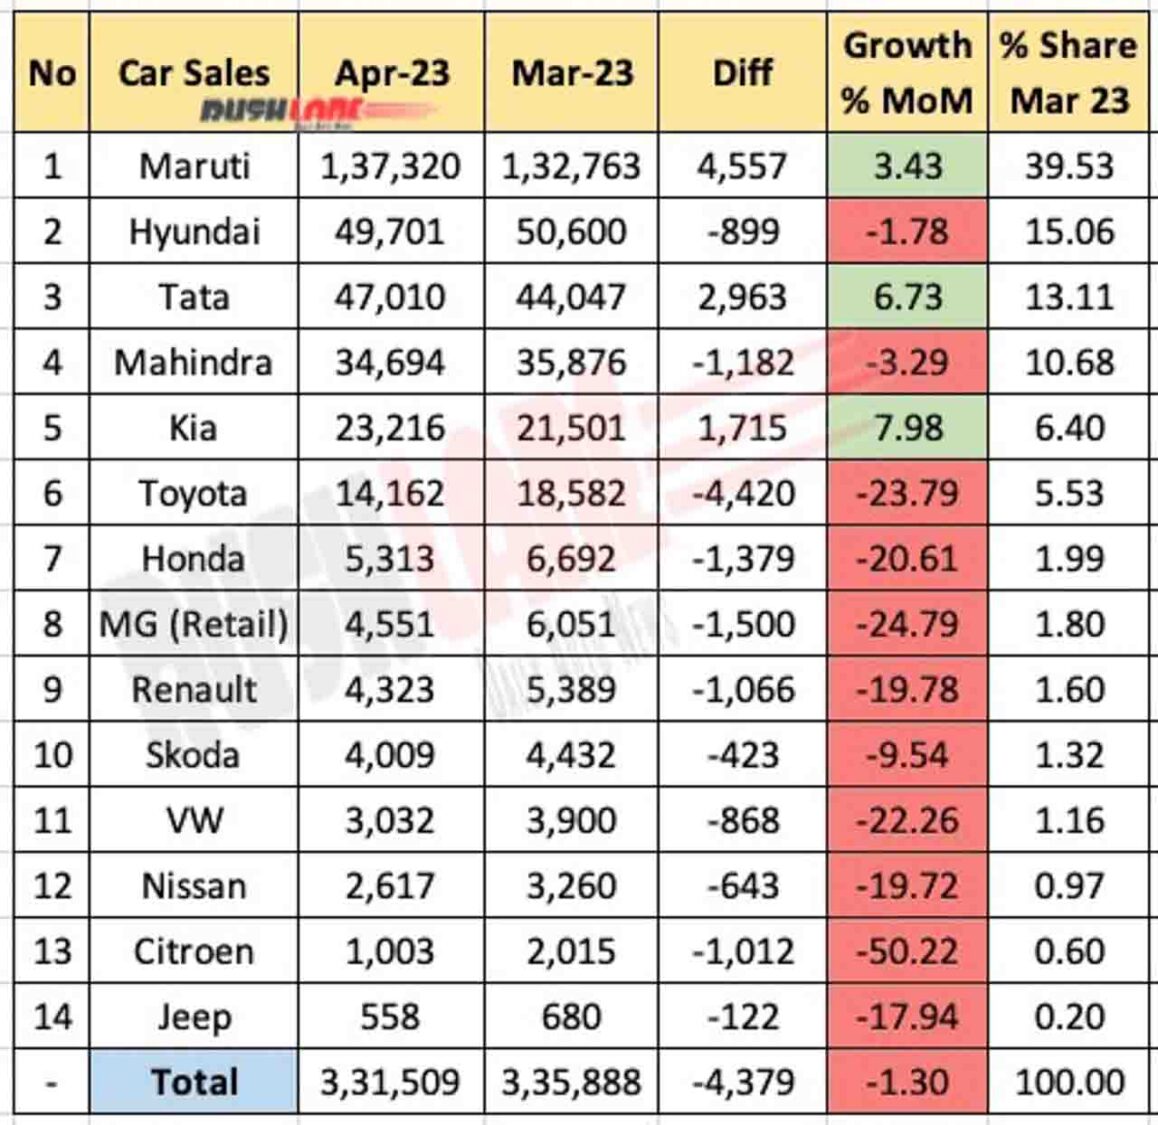 Car Sales April 2023 vs April 2022 - MoM report